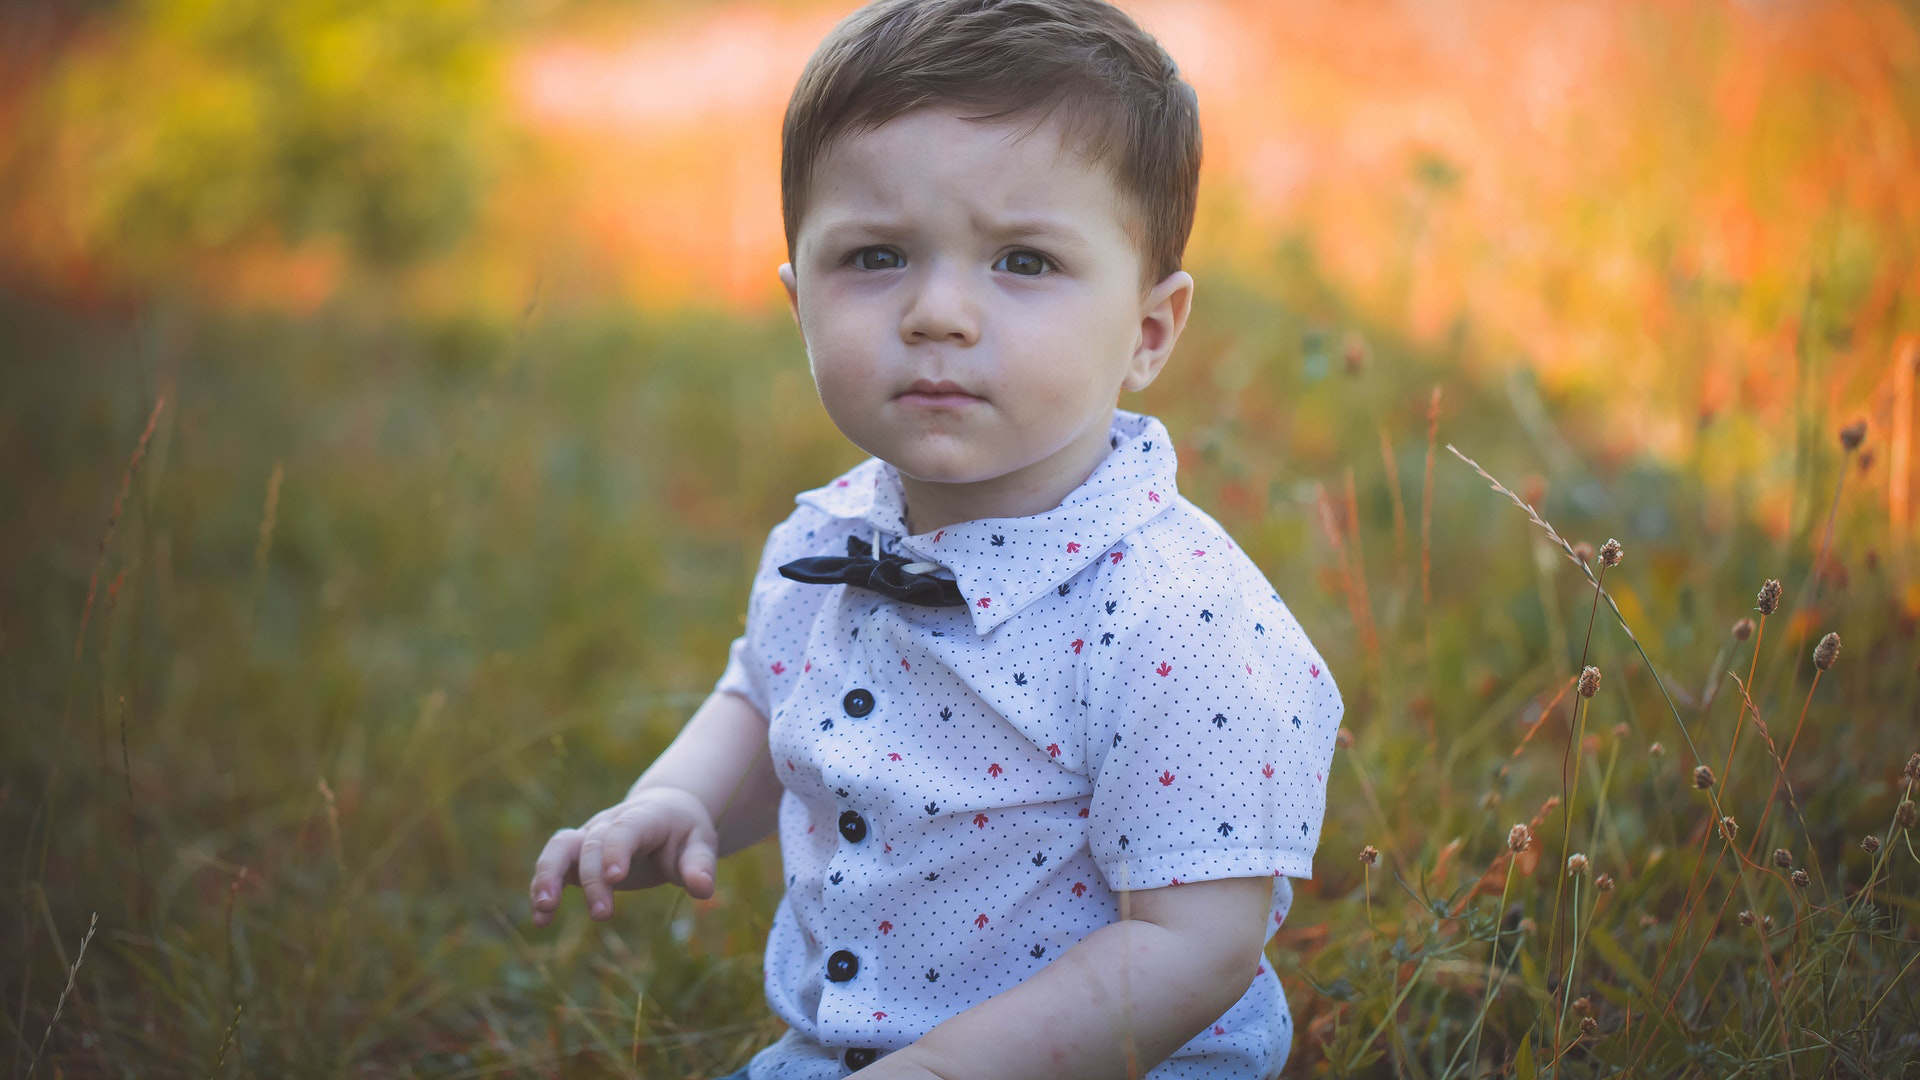 Baby Boy Is Sitting On Grass In Blur Wallpaper Wearing White Dress HD